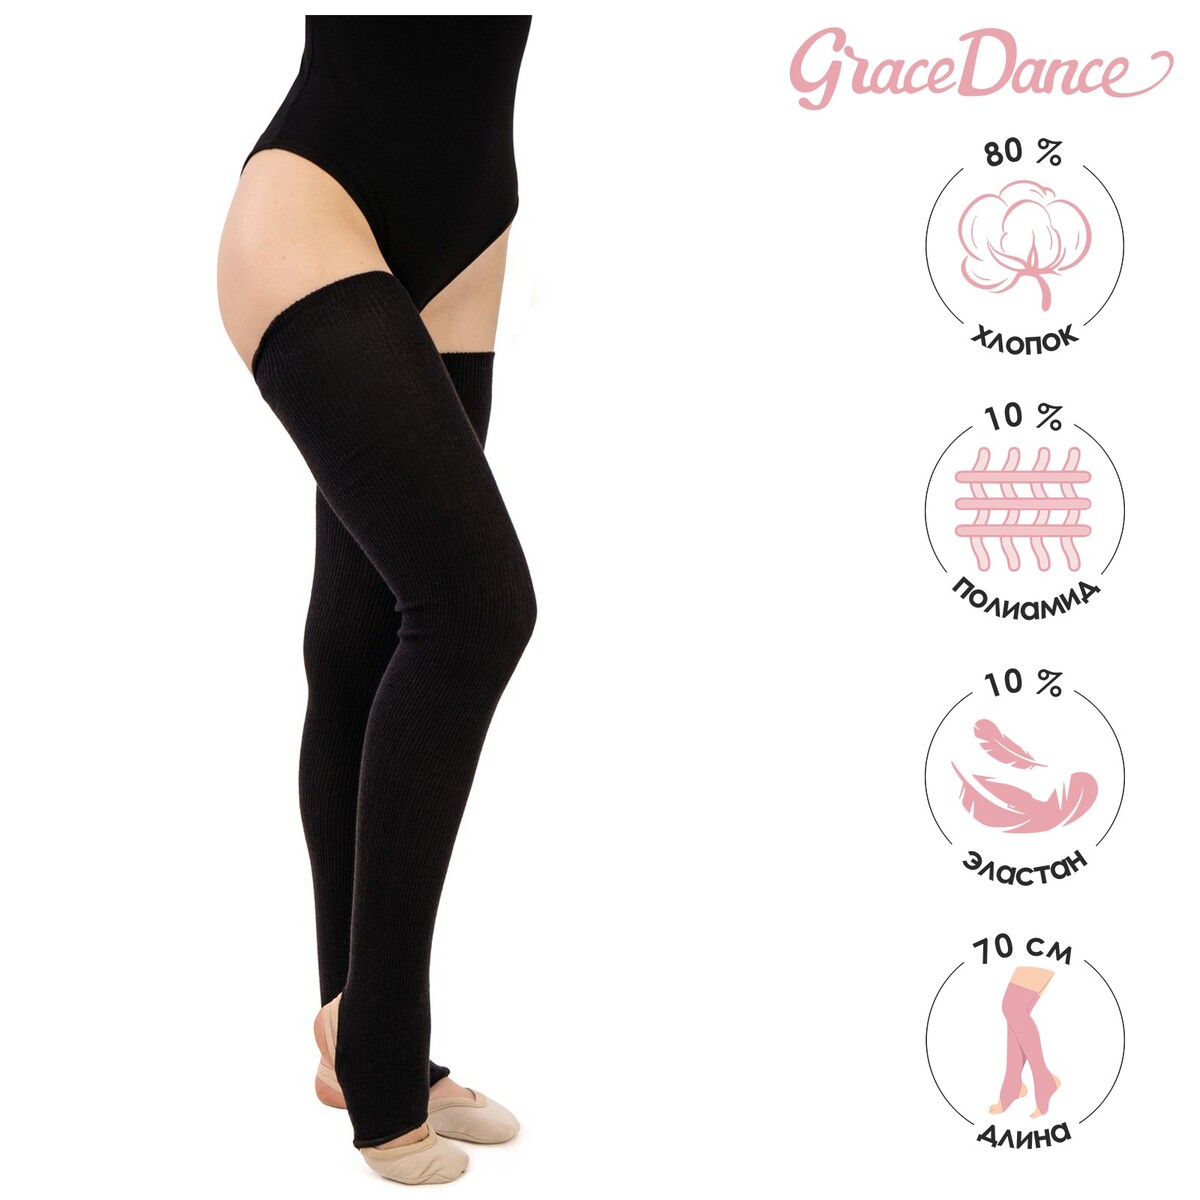 Гетры для танцев grace dance №3, на резинке, длина 70 см, цвет черный гетры для танцев grace dance 1 полушерстяные длина 60 см серый